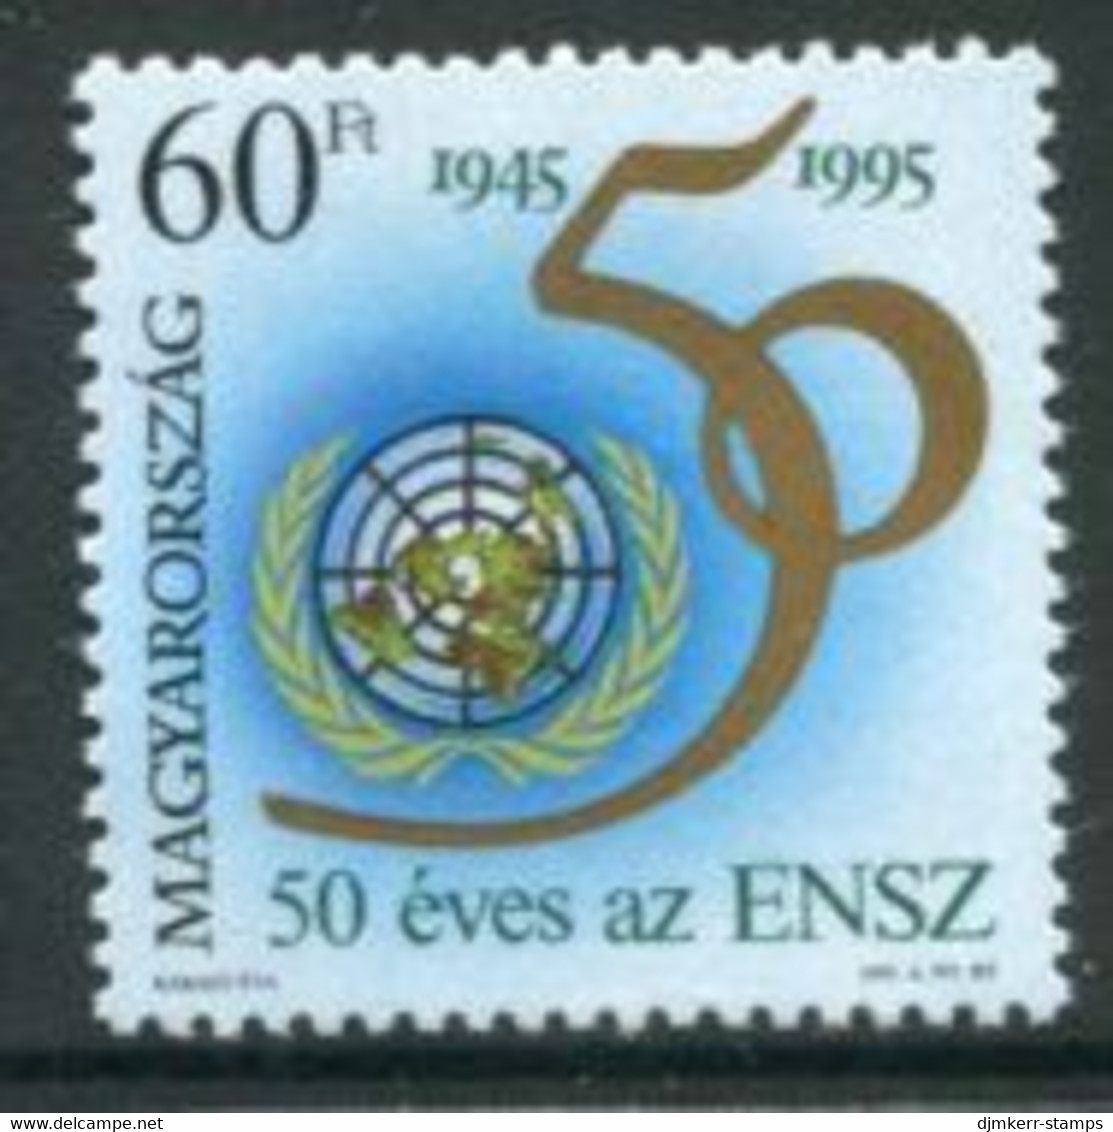 HUNGARY 1995 UNO Anniversary MNH / **.  Michel  4361 - Ungebraucht